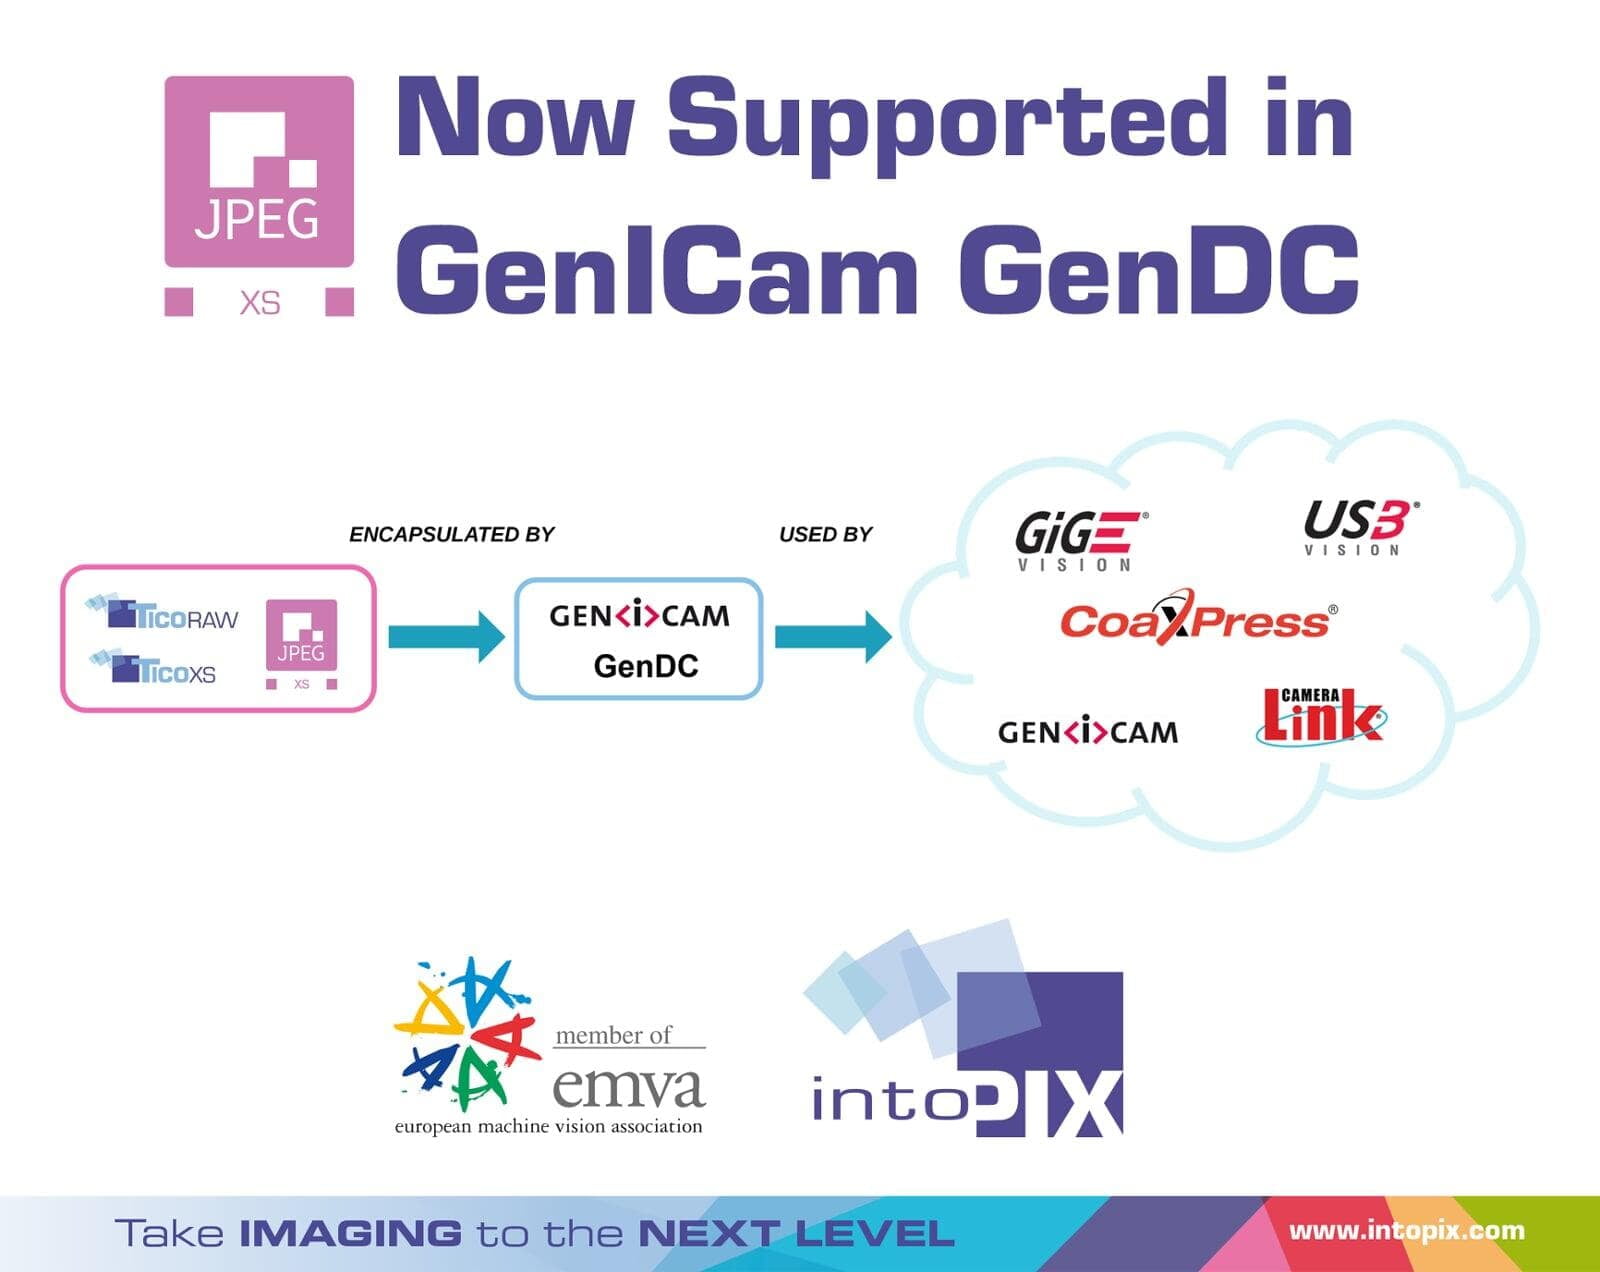 JPEG XS adhère à la norme GenICam en matière de vision industrielle, gérée par l'EMVA